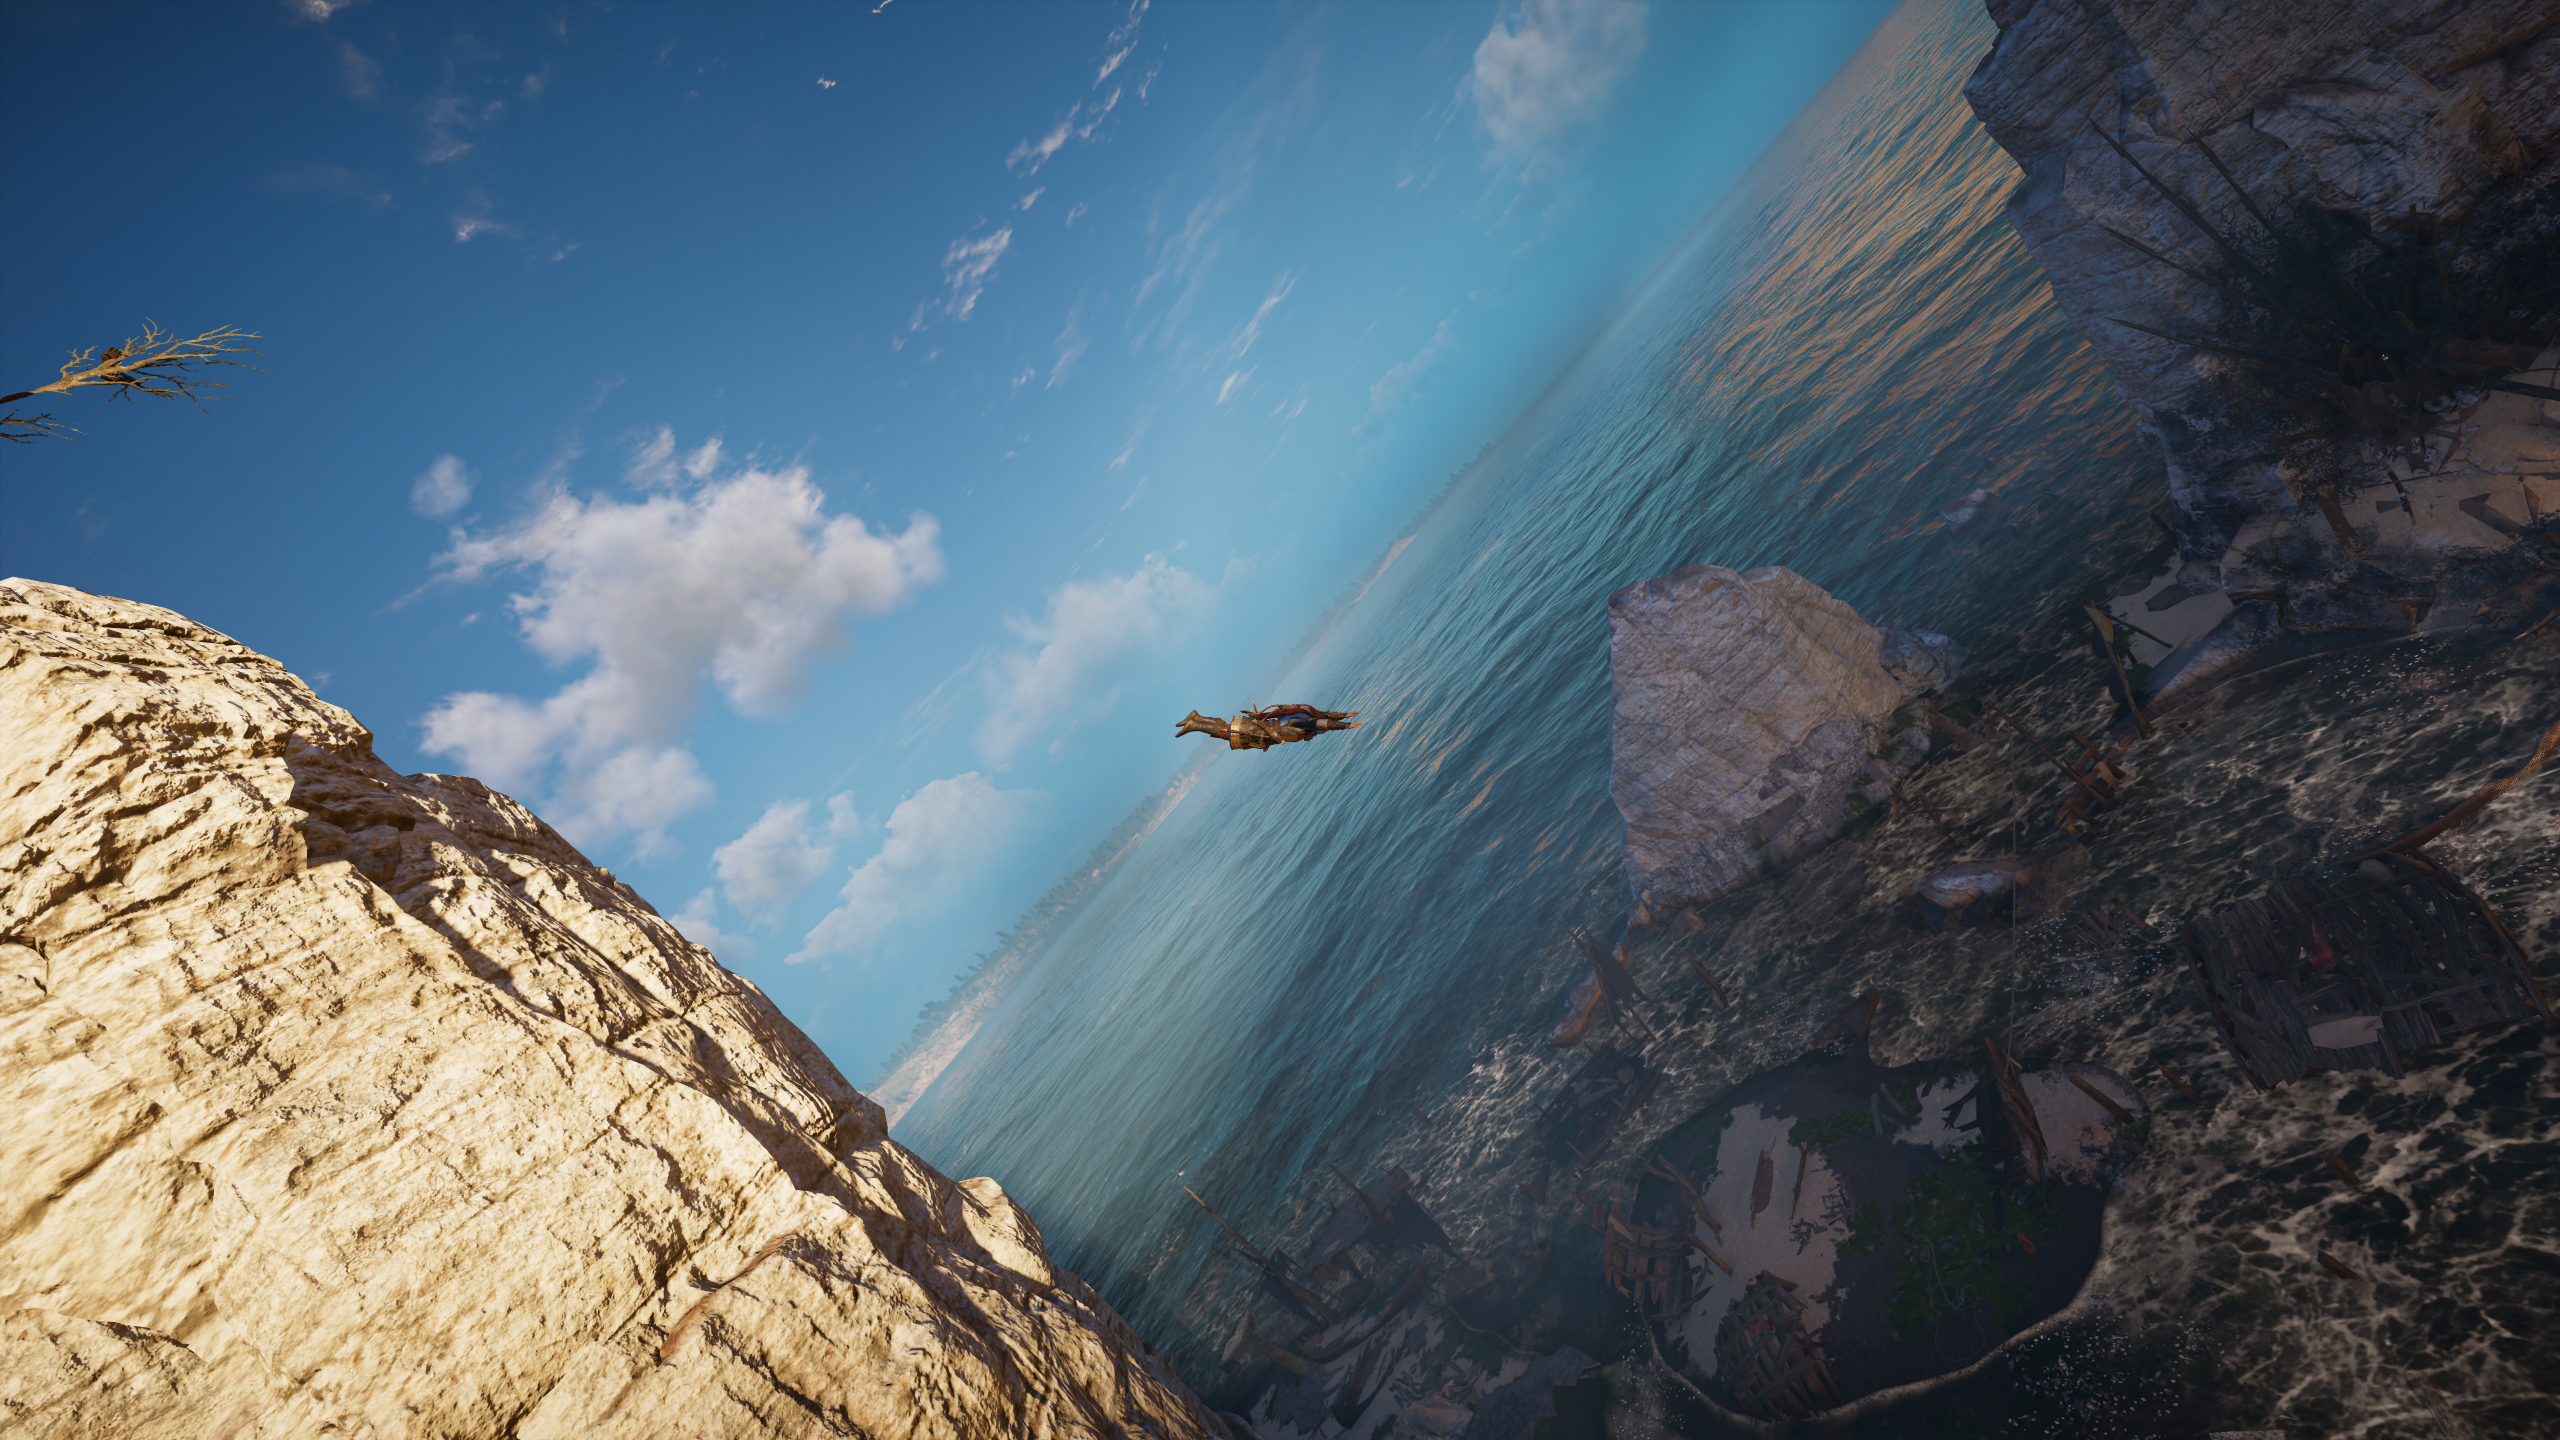 Screen Shot Dutch Tilt Diving Shipwreck Ocean View Assassins Creed Valhalla Video Games 2560x1440